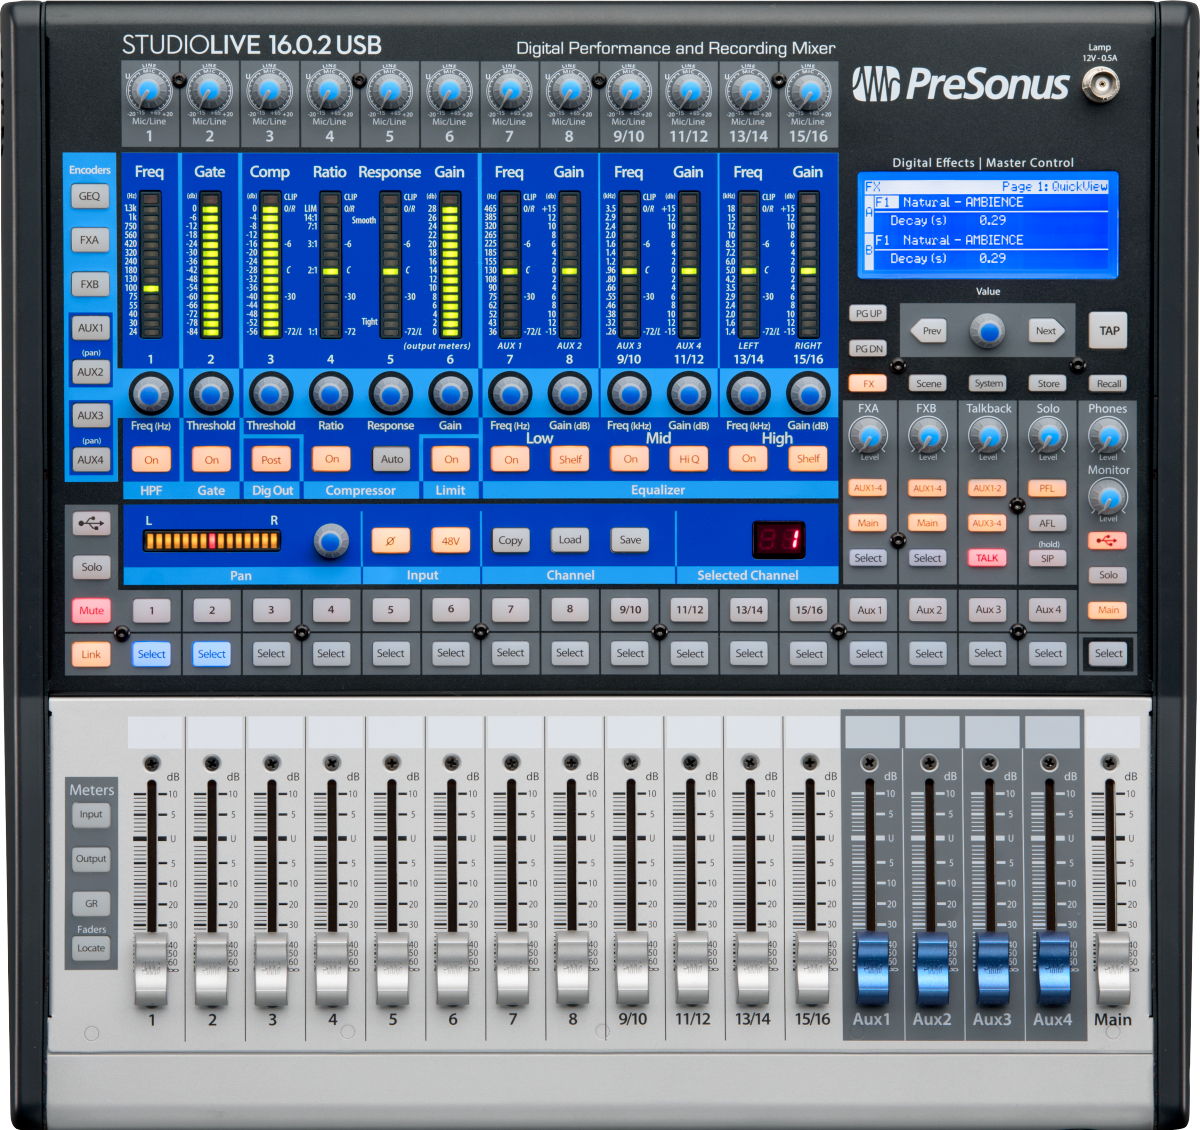 PreSonus StudioLive Classic 16.0.2 USB Digital Console Mixer top